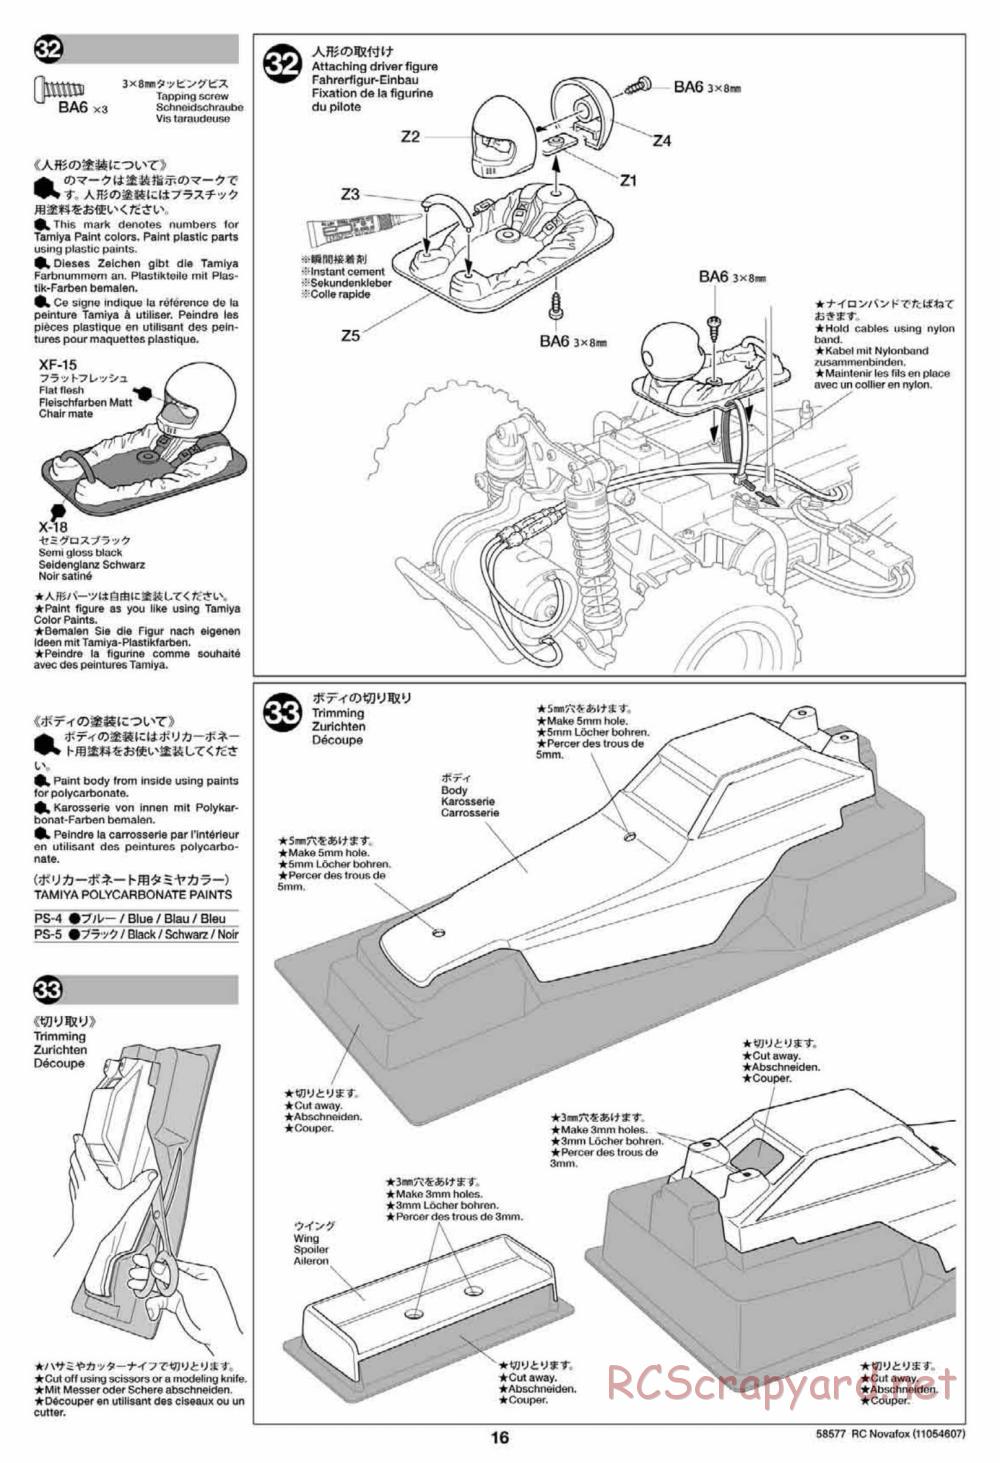 Tamiya - Novafox Chassis - Manual - Page 16